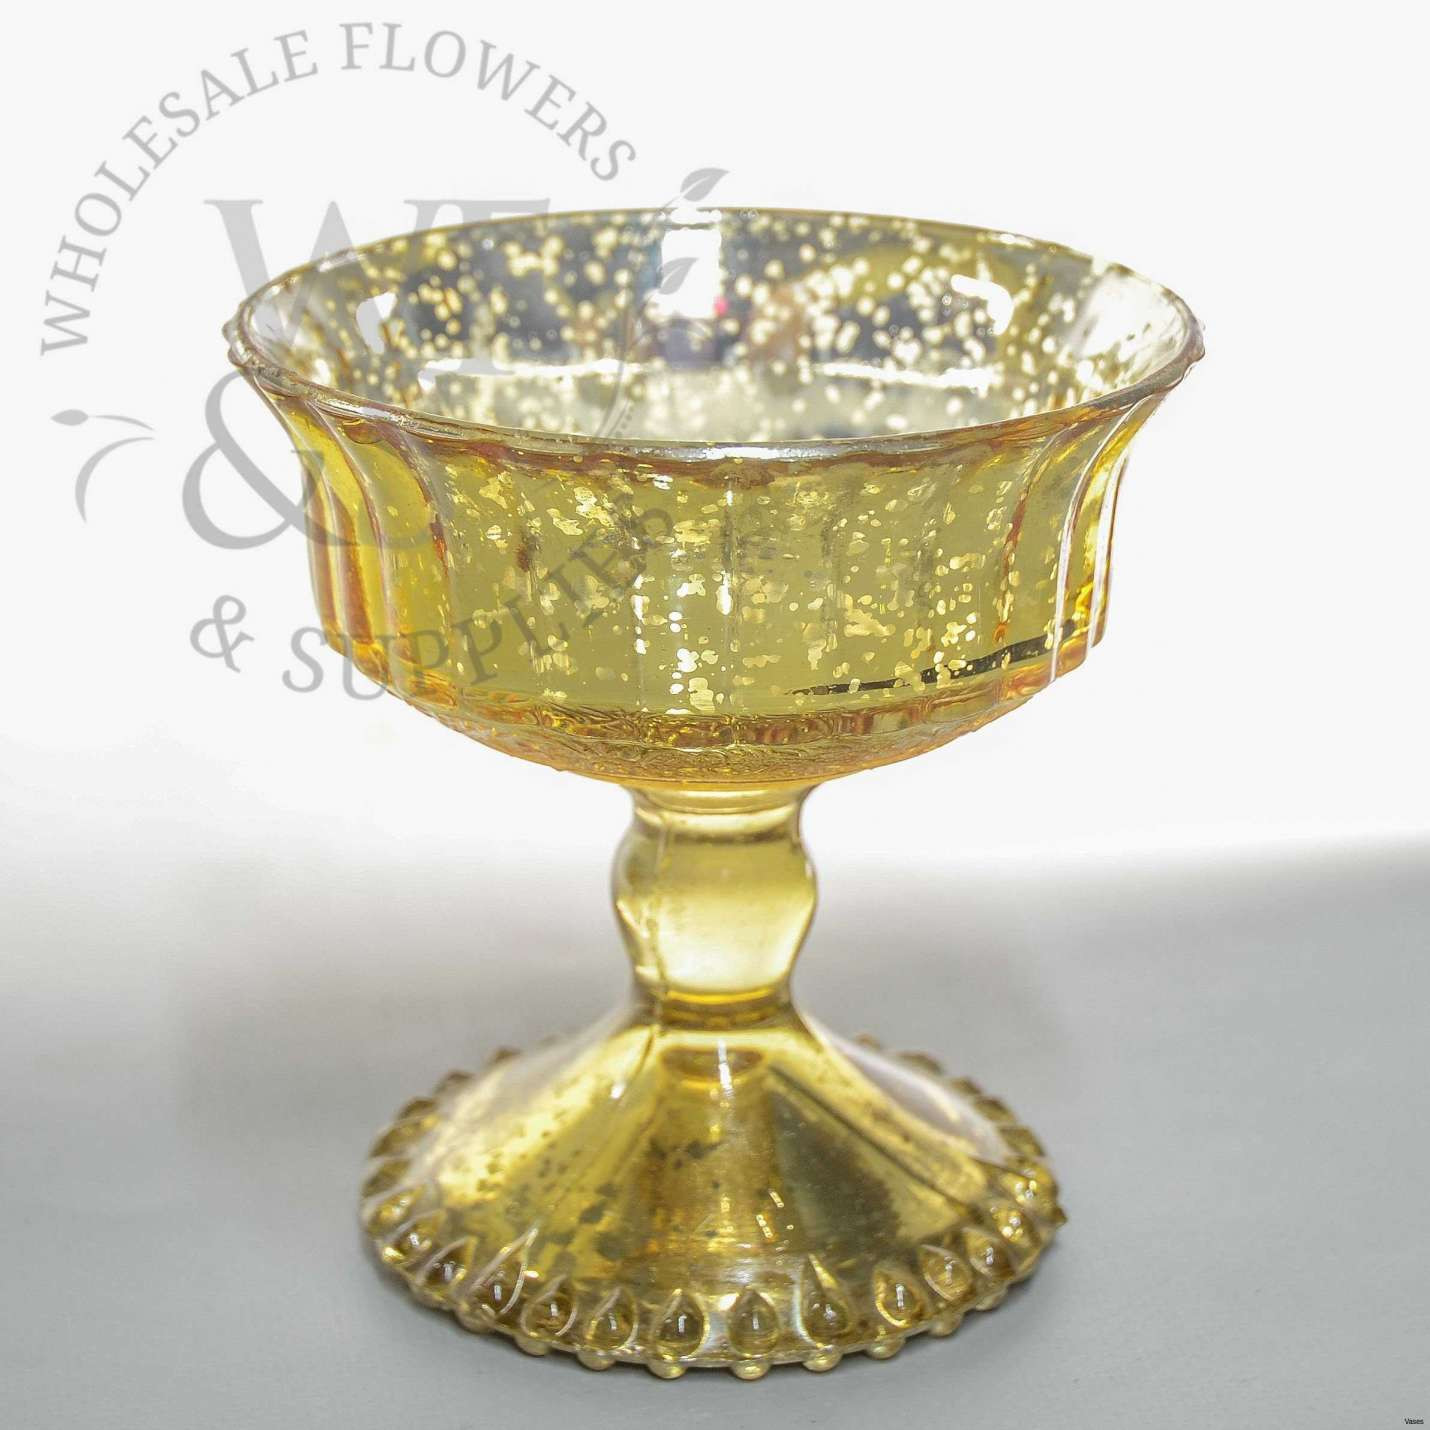 11 Lovely Pedestal Bowl Vase 2024 free download pedestal bowl vase of 49 images gold glass lamp www sabordemexicogrill com page with dsc7285h vases gold pedestal vase glass 4 8 i 0d